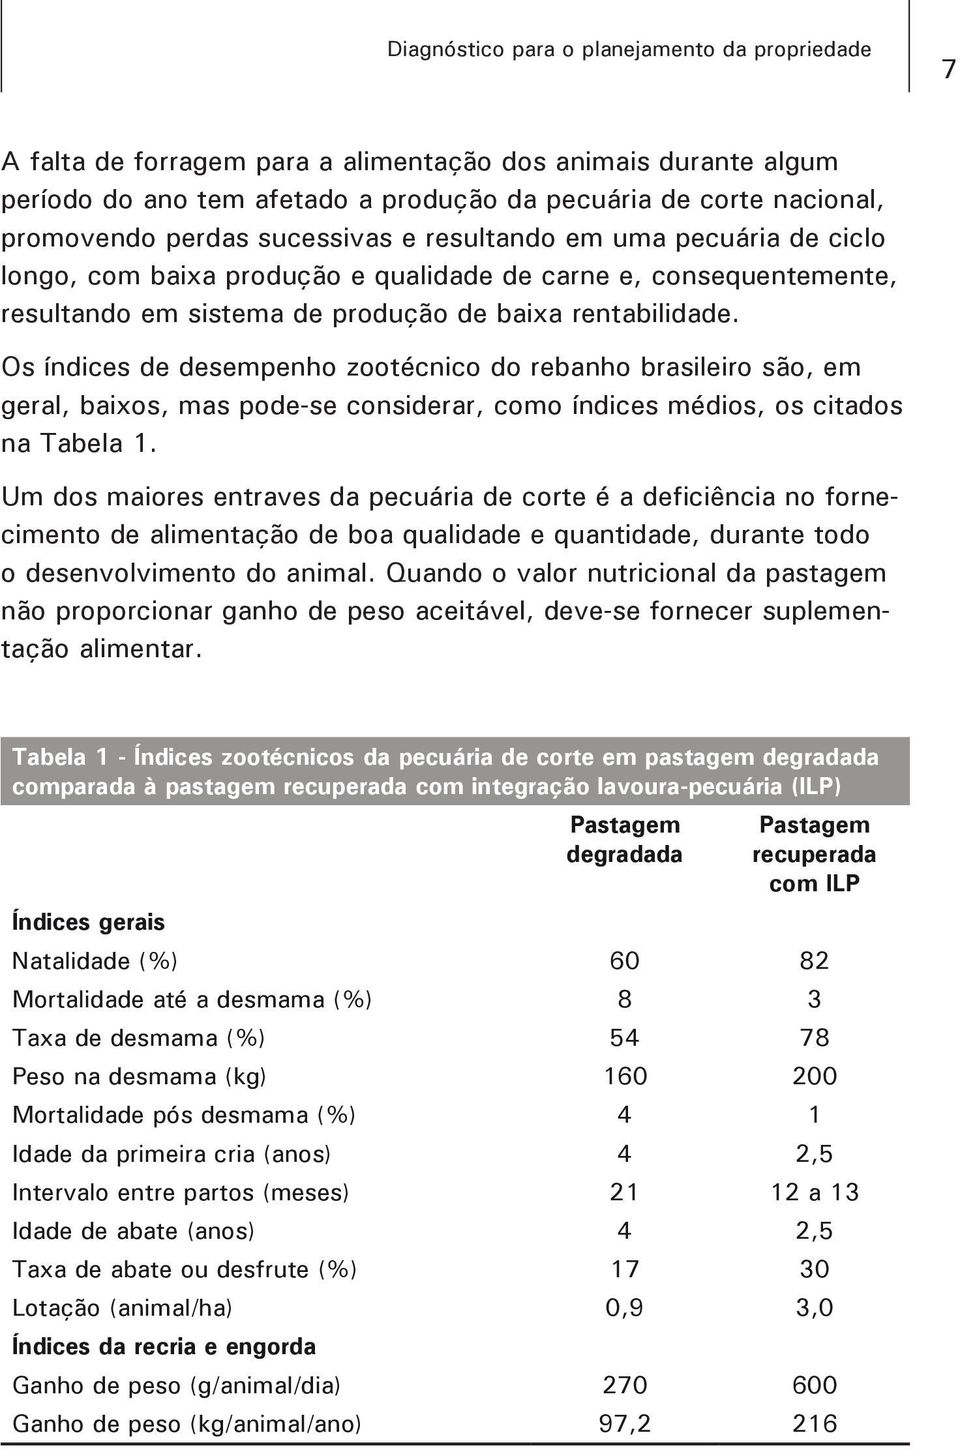 Os índices de desempenho zootécnico do rebanho brasileiro são, em geral, baixos, mas pode-se considerar, como índices médios, os citados na Tabela 1.